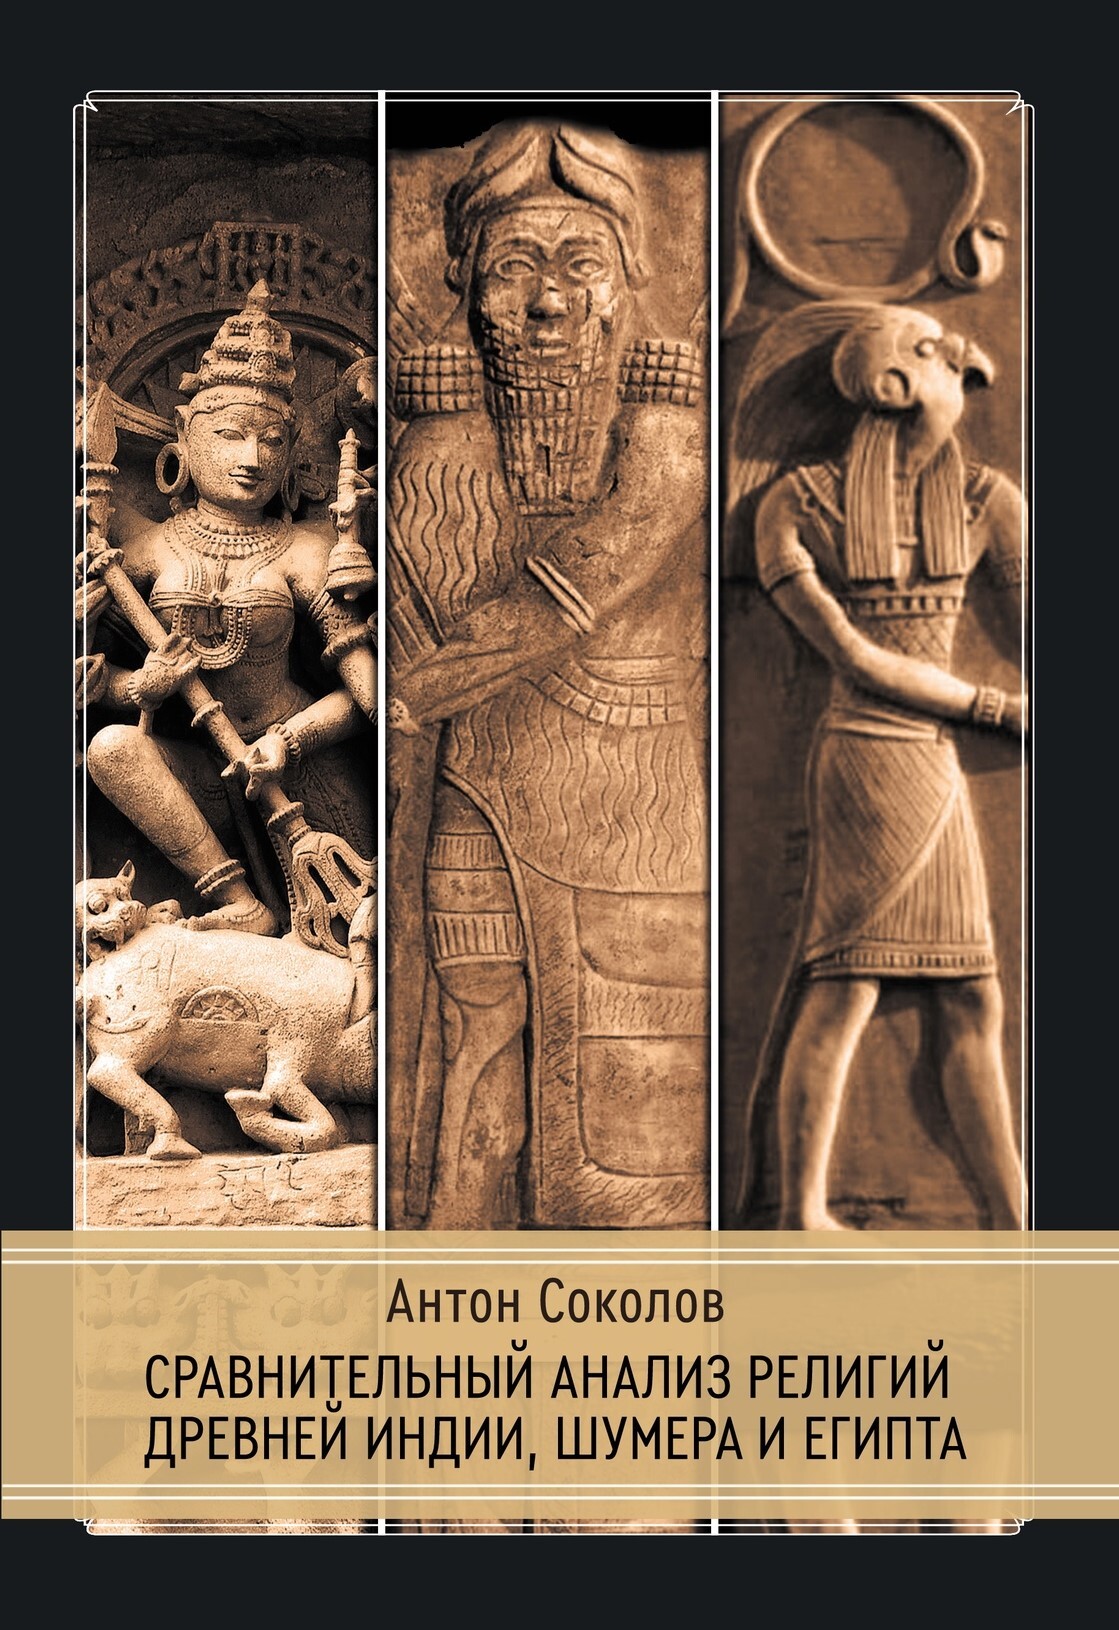 Сравнительный анализ религий древней Индии, Шумера и Египта